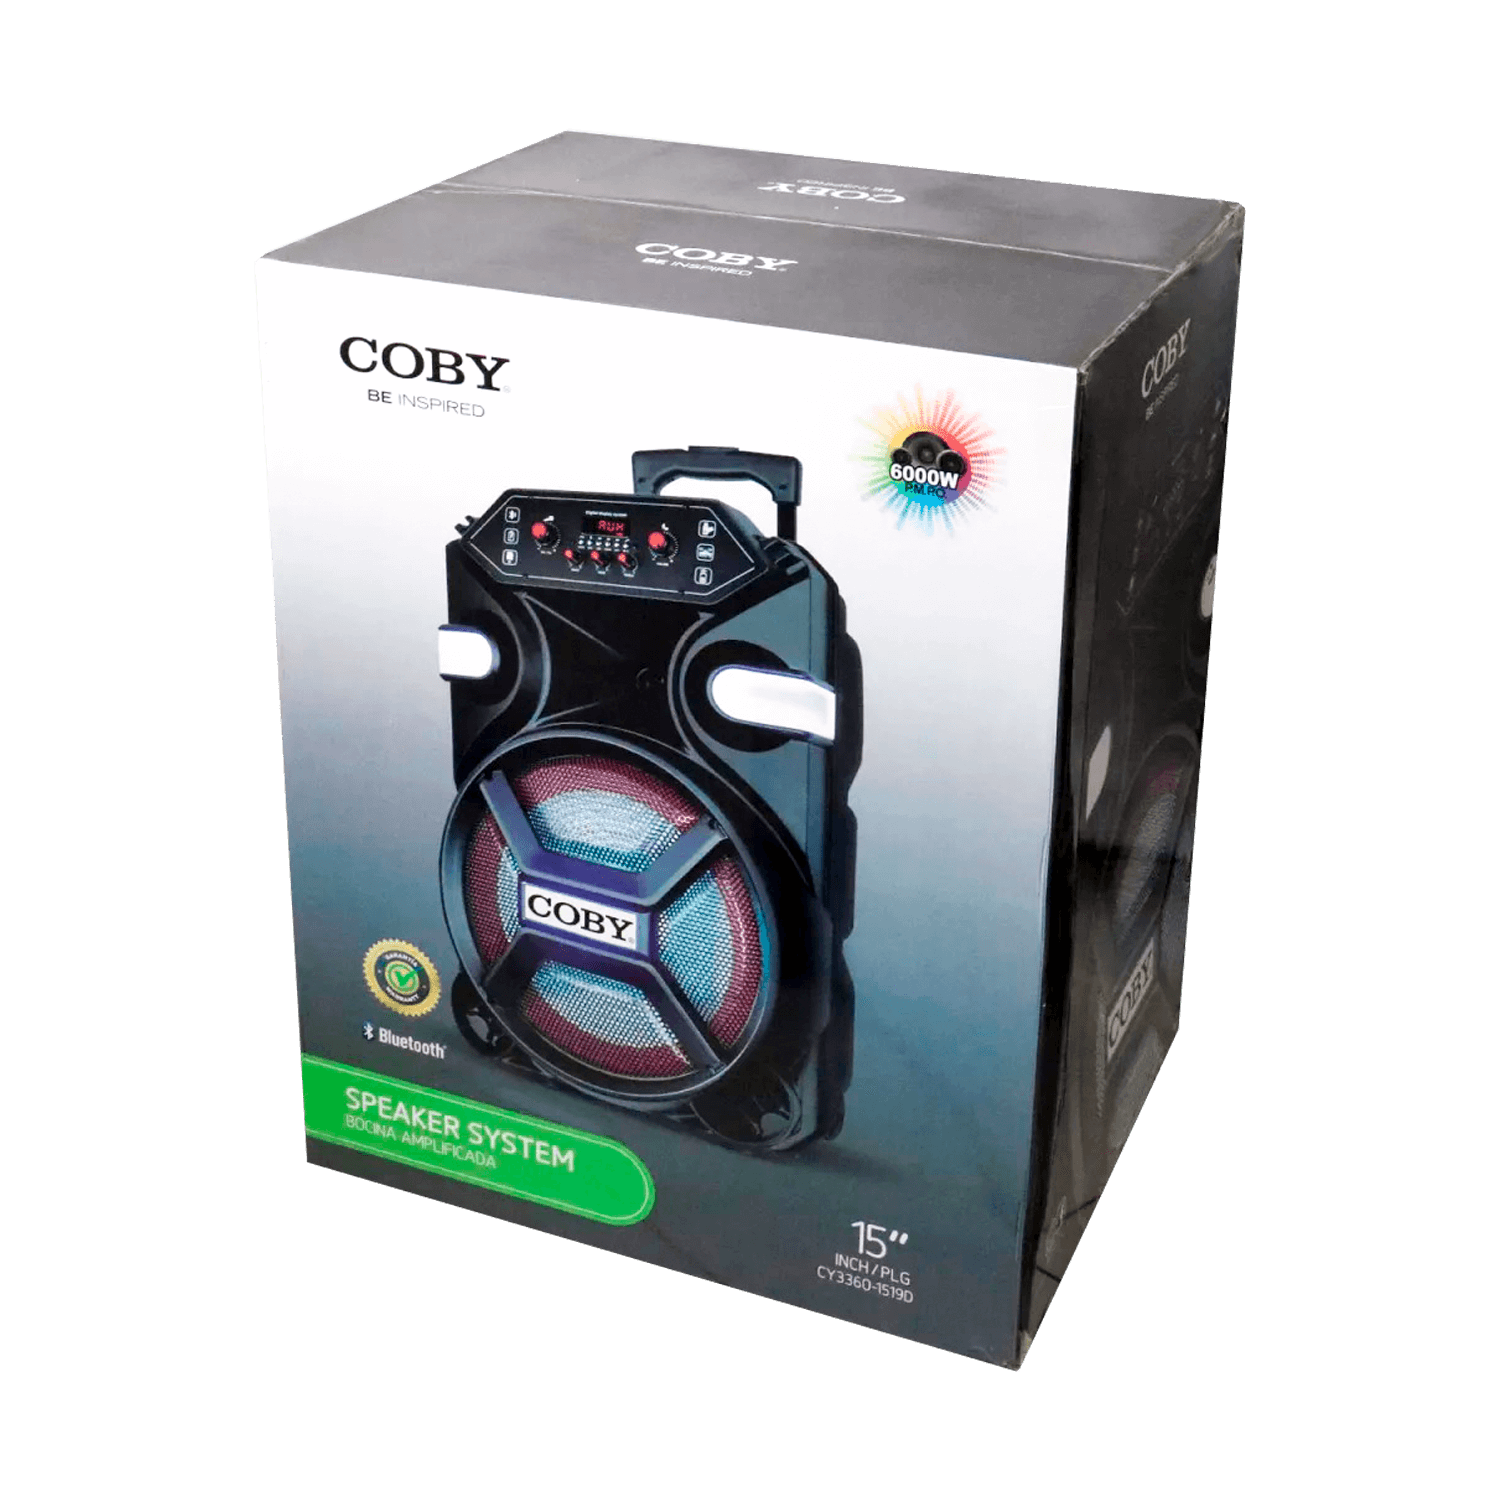 Caixa de Som Coby CY3360-1519D 15" / Microfone / USB / Bluetooth / SD / FM / AUX - Preto